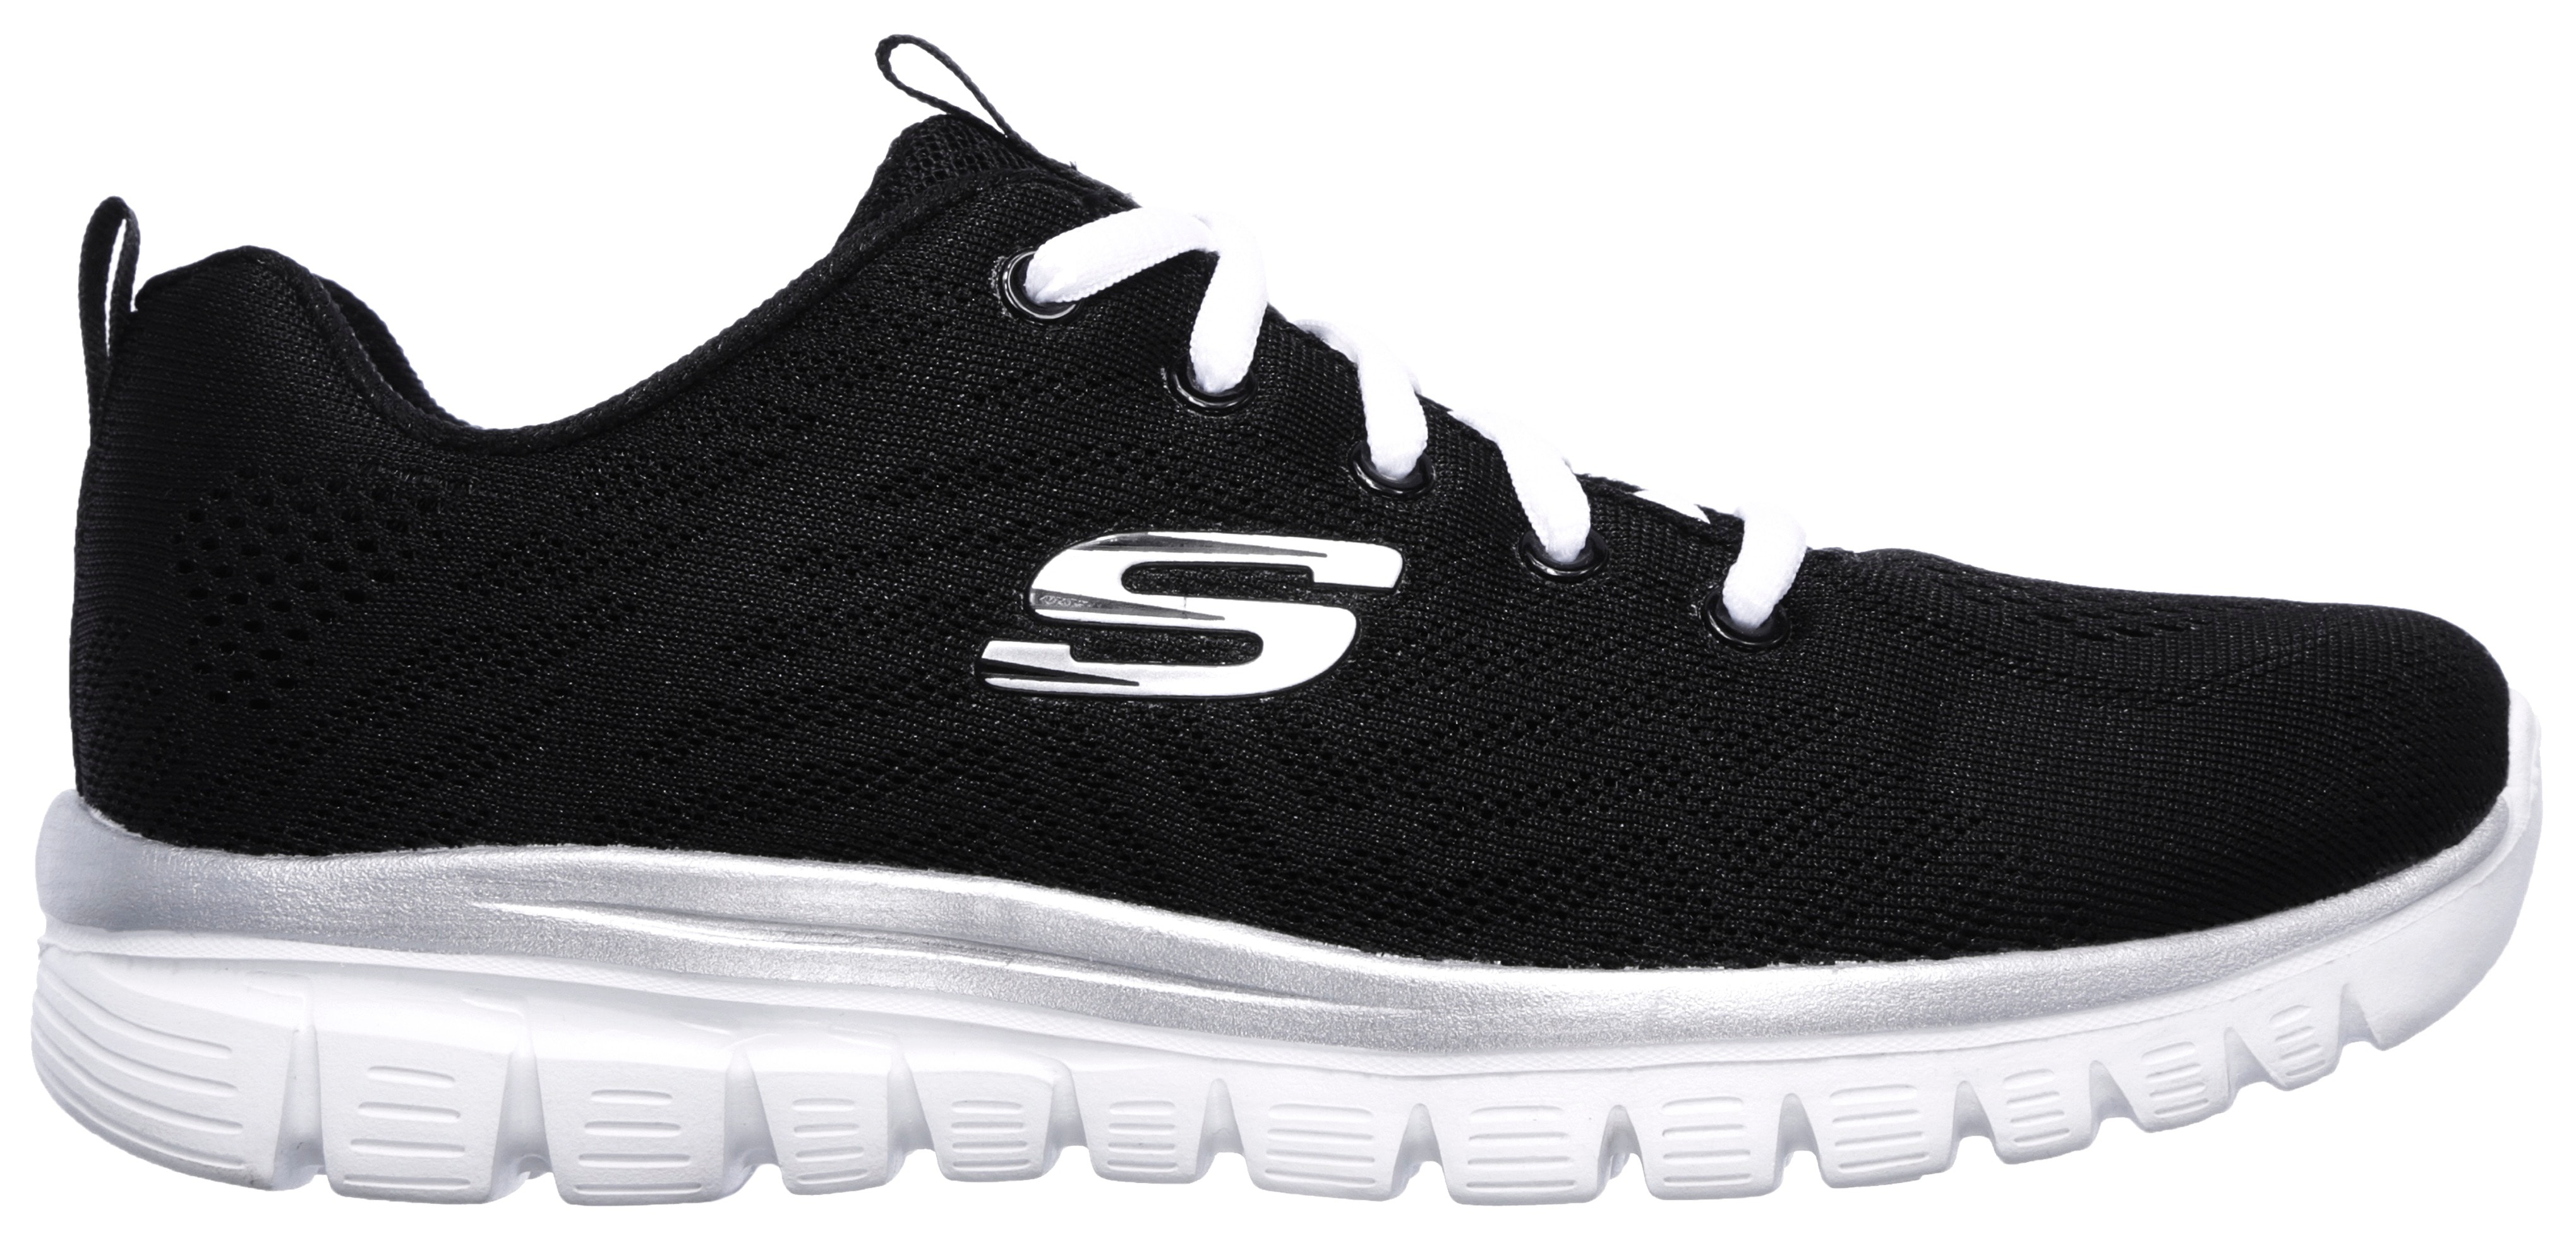 Skechers Sneaker "Graceful - Get Connected"